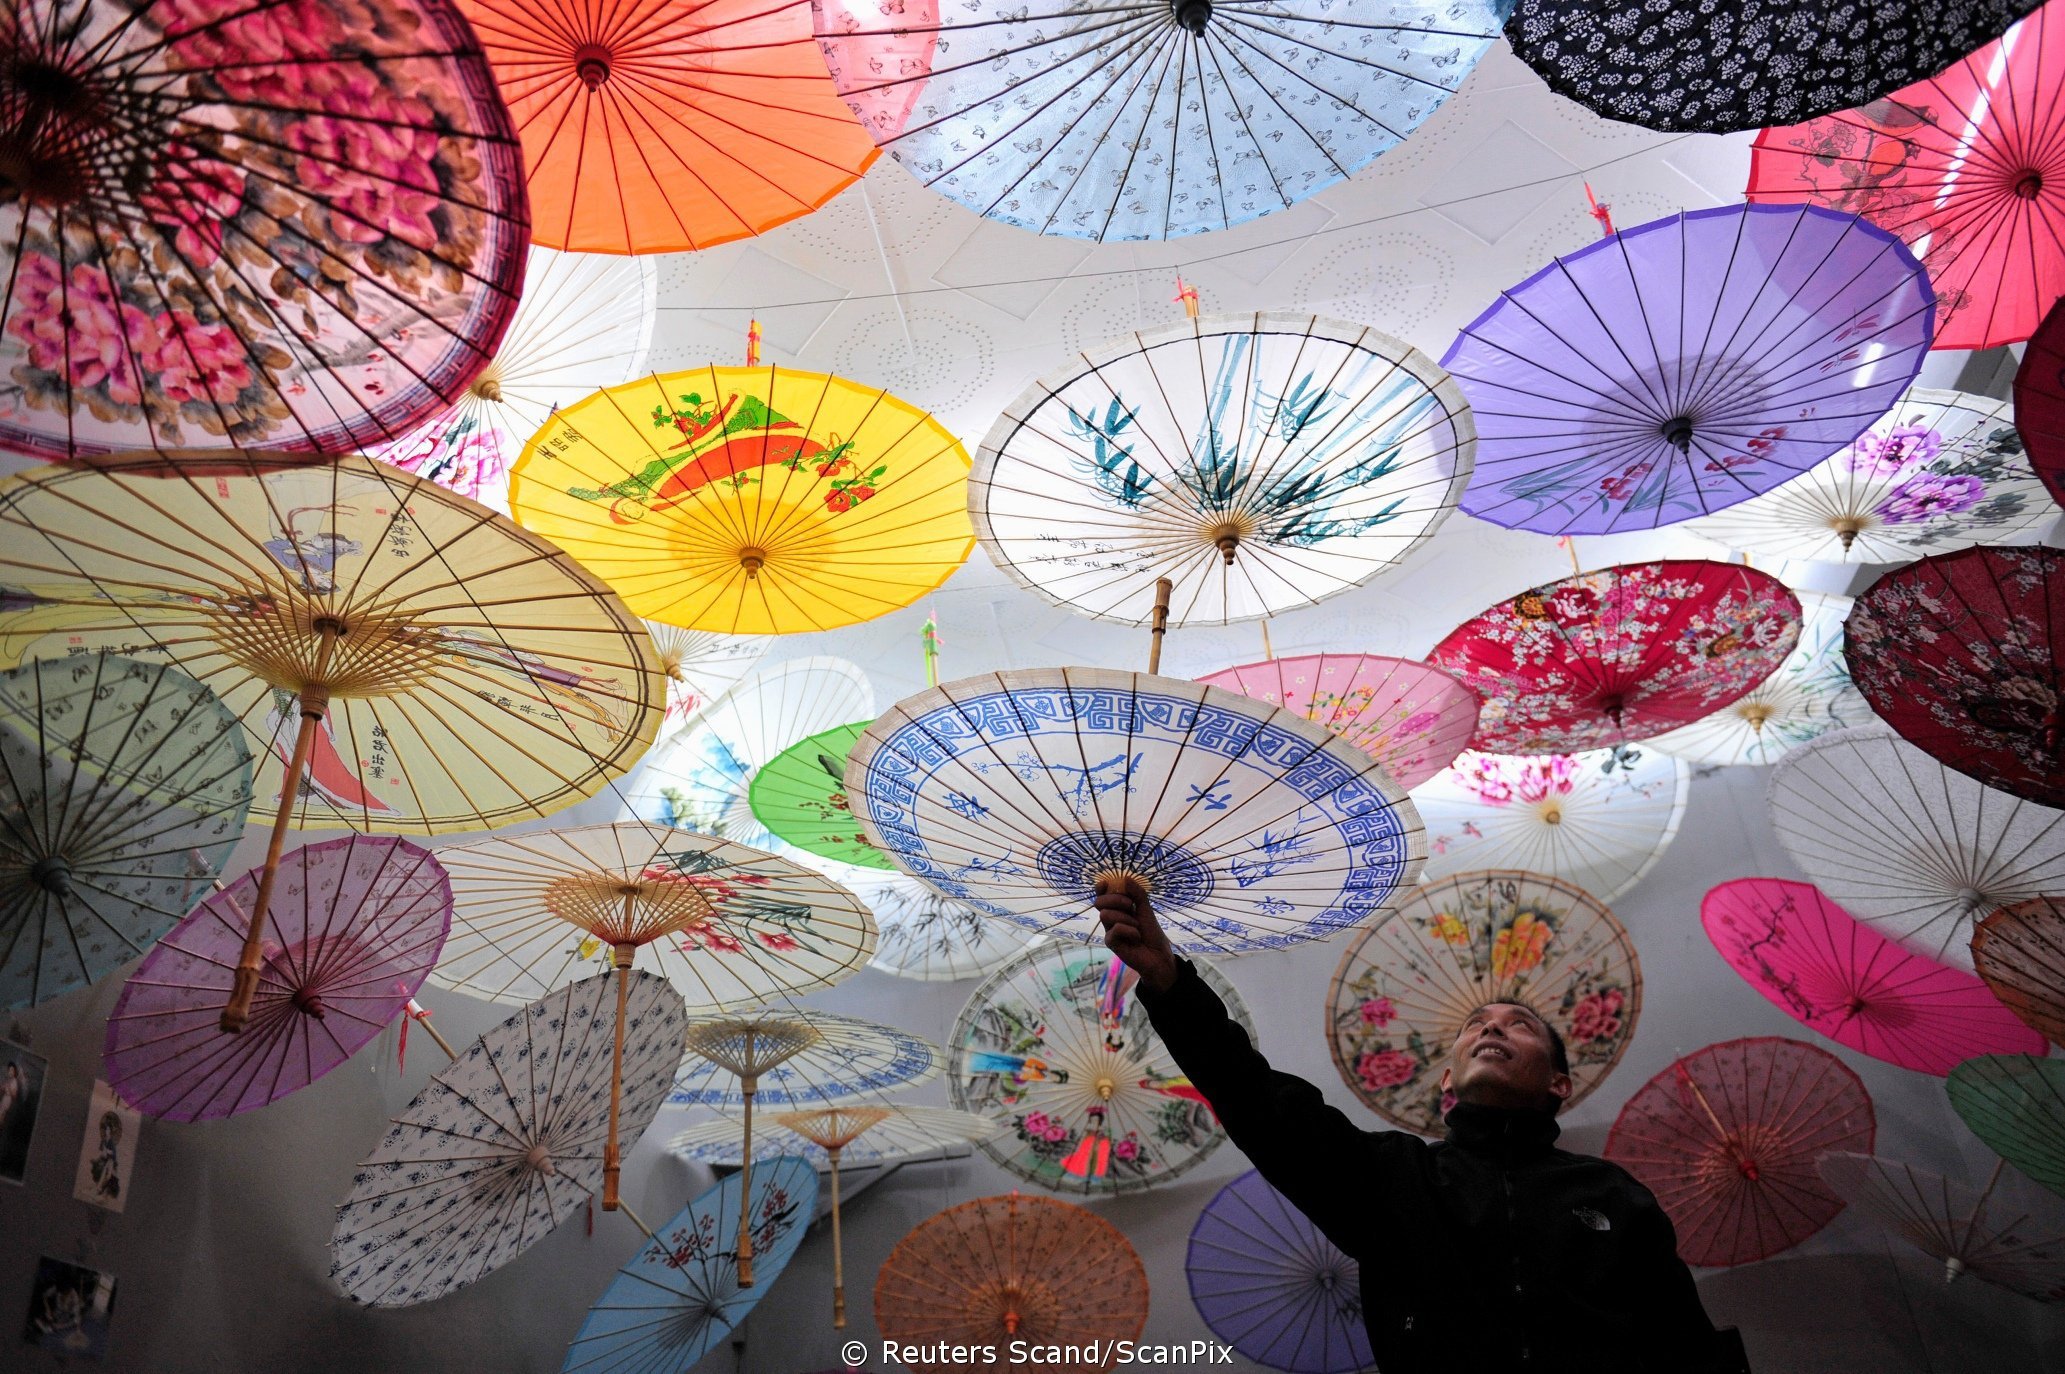 Продавец зонтиков. Японский зонтик. Китайский зонтик. Разноцветные зонтики. Украшение потолка зонтиками.